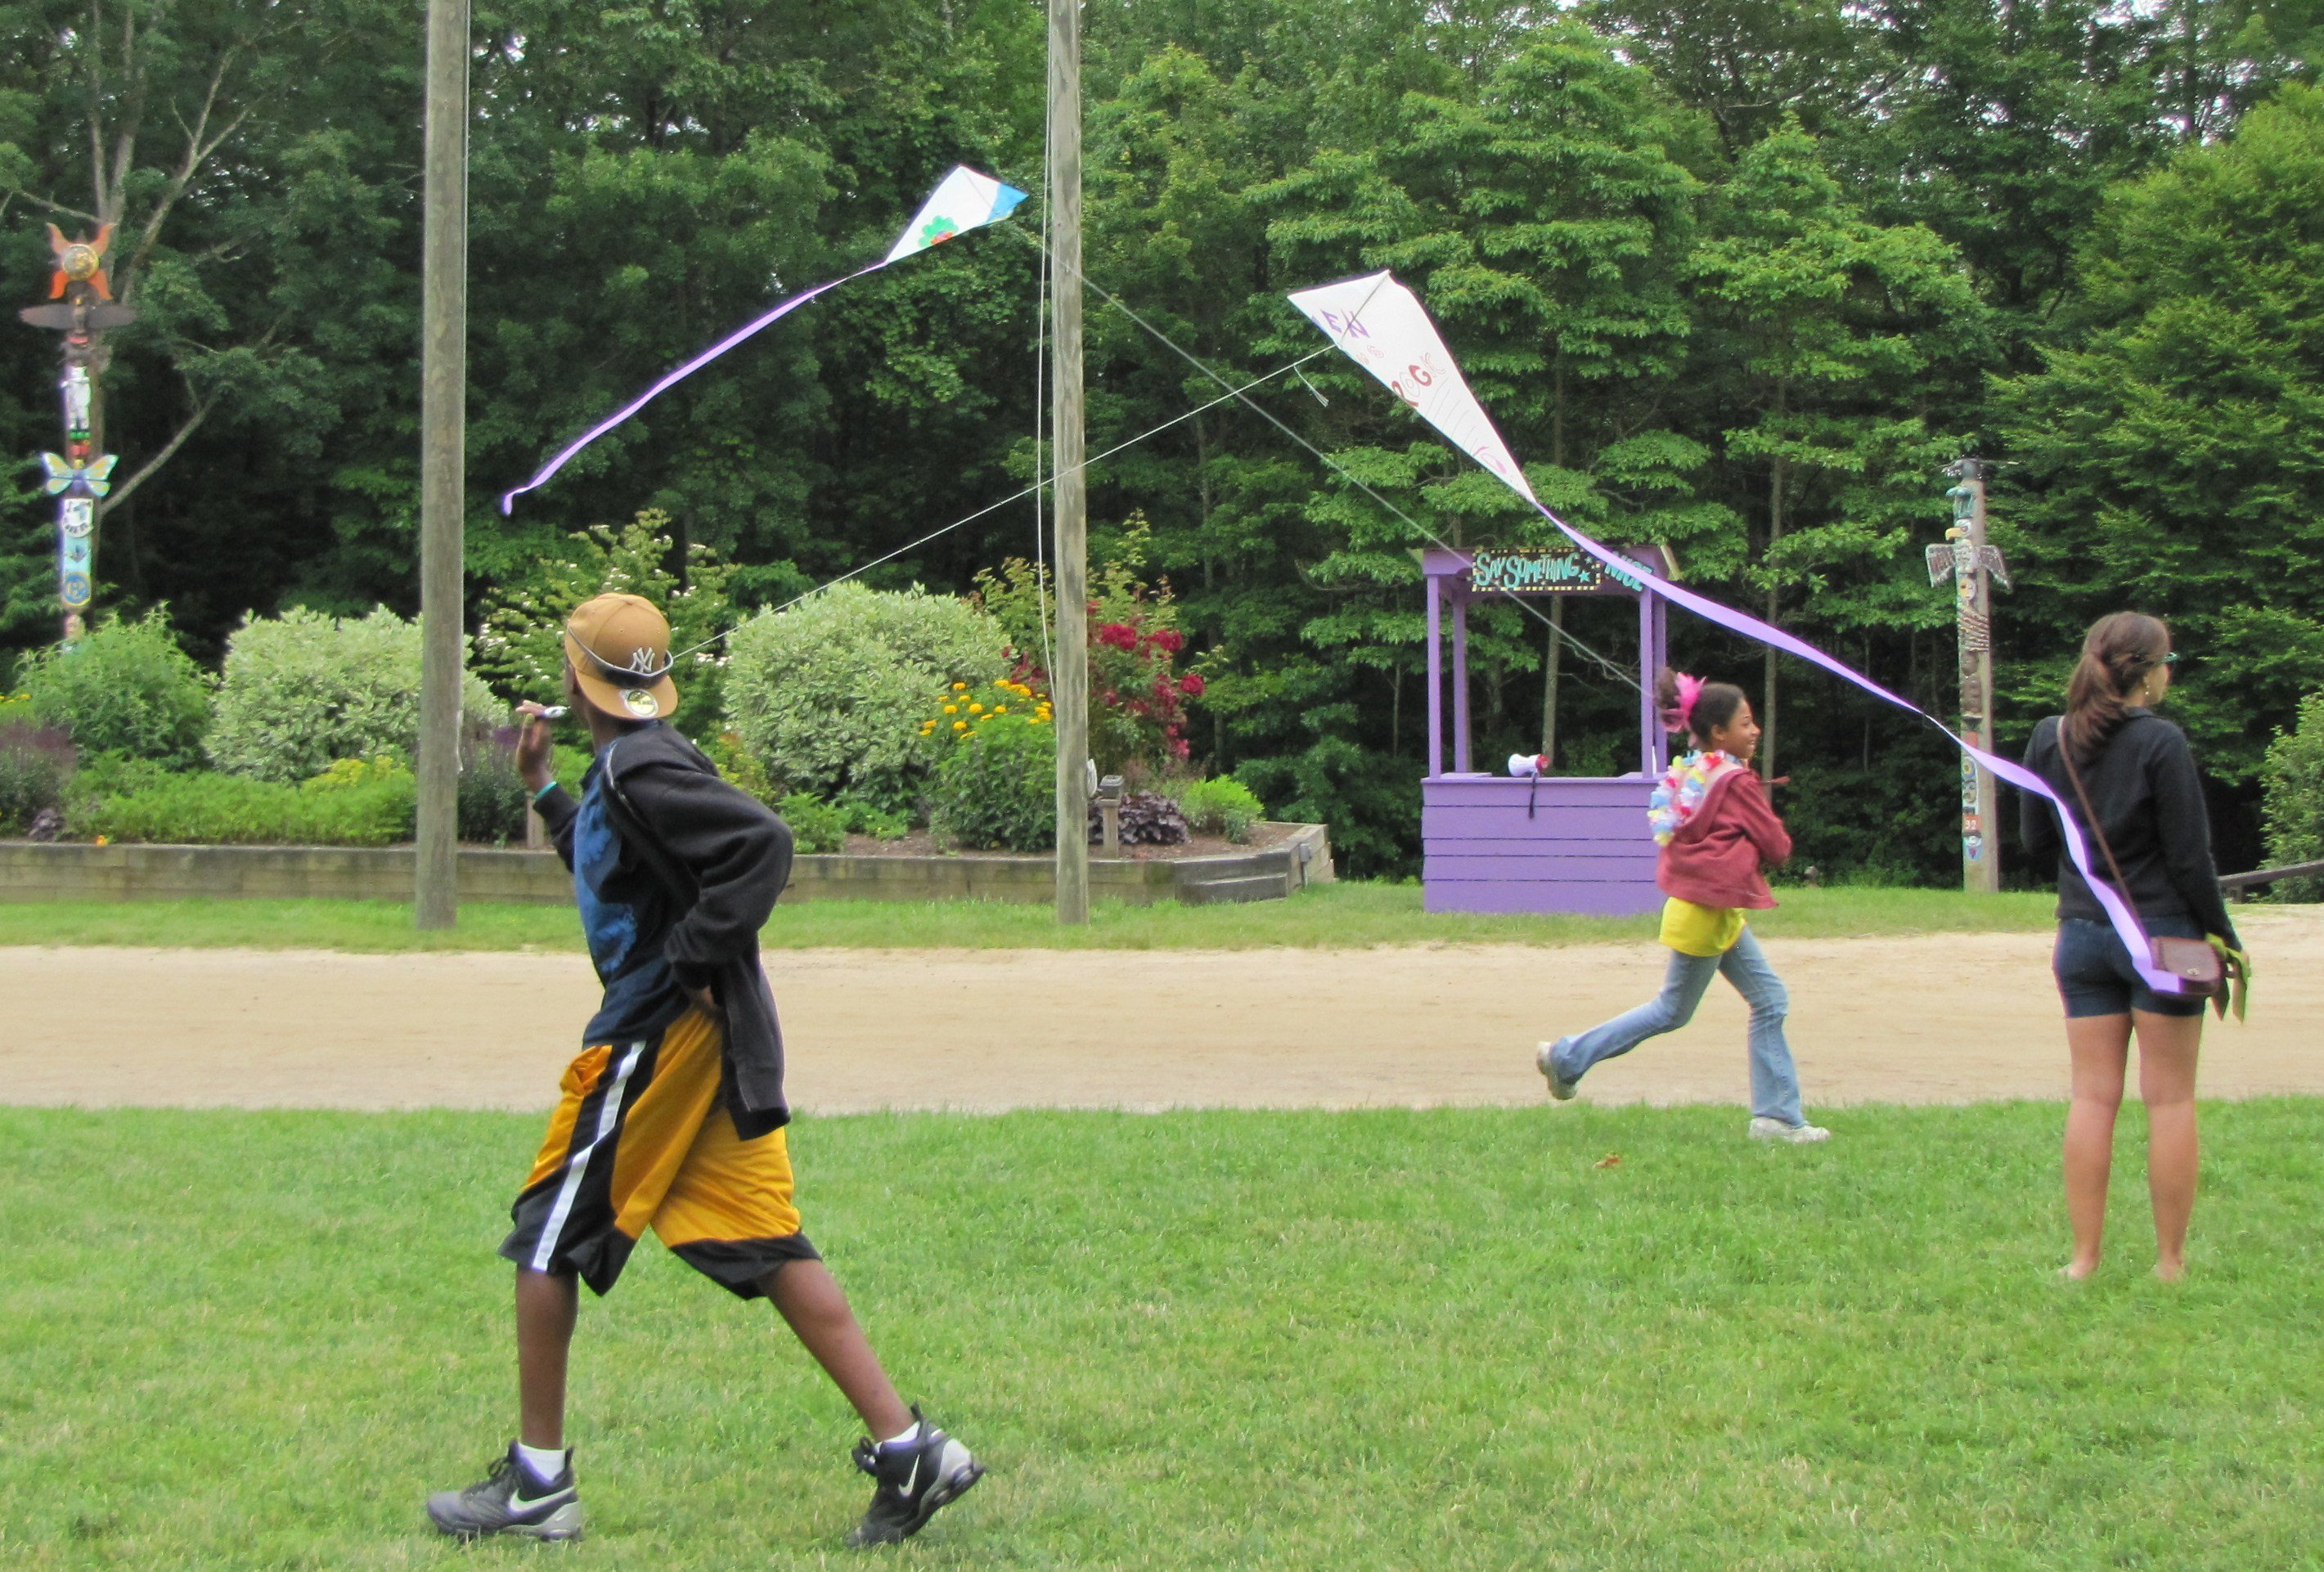 Kids flying kites at camp.